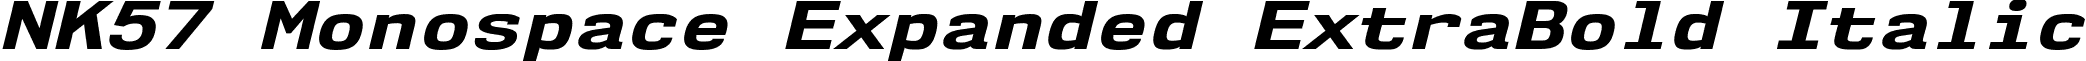 NK57 Monospace Expanded ExtraBold Italic font - nk57-monospace.expanded-extrabold-italic.ttf